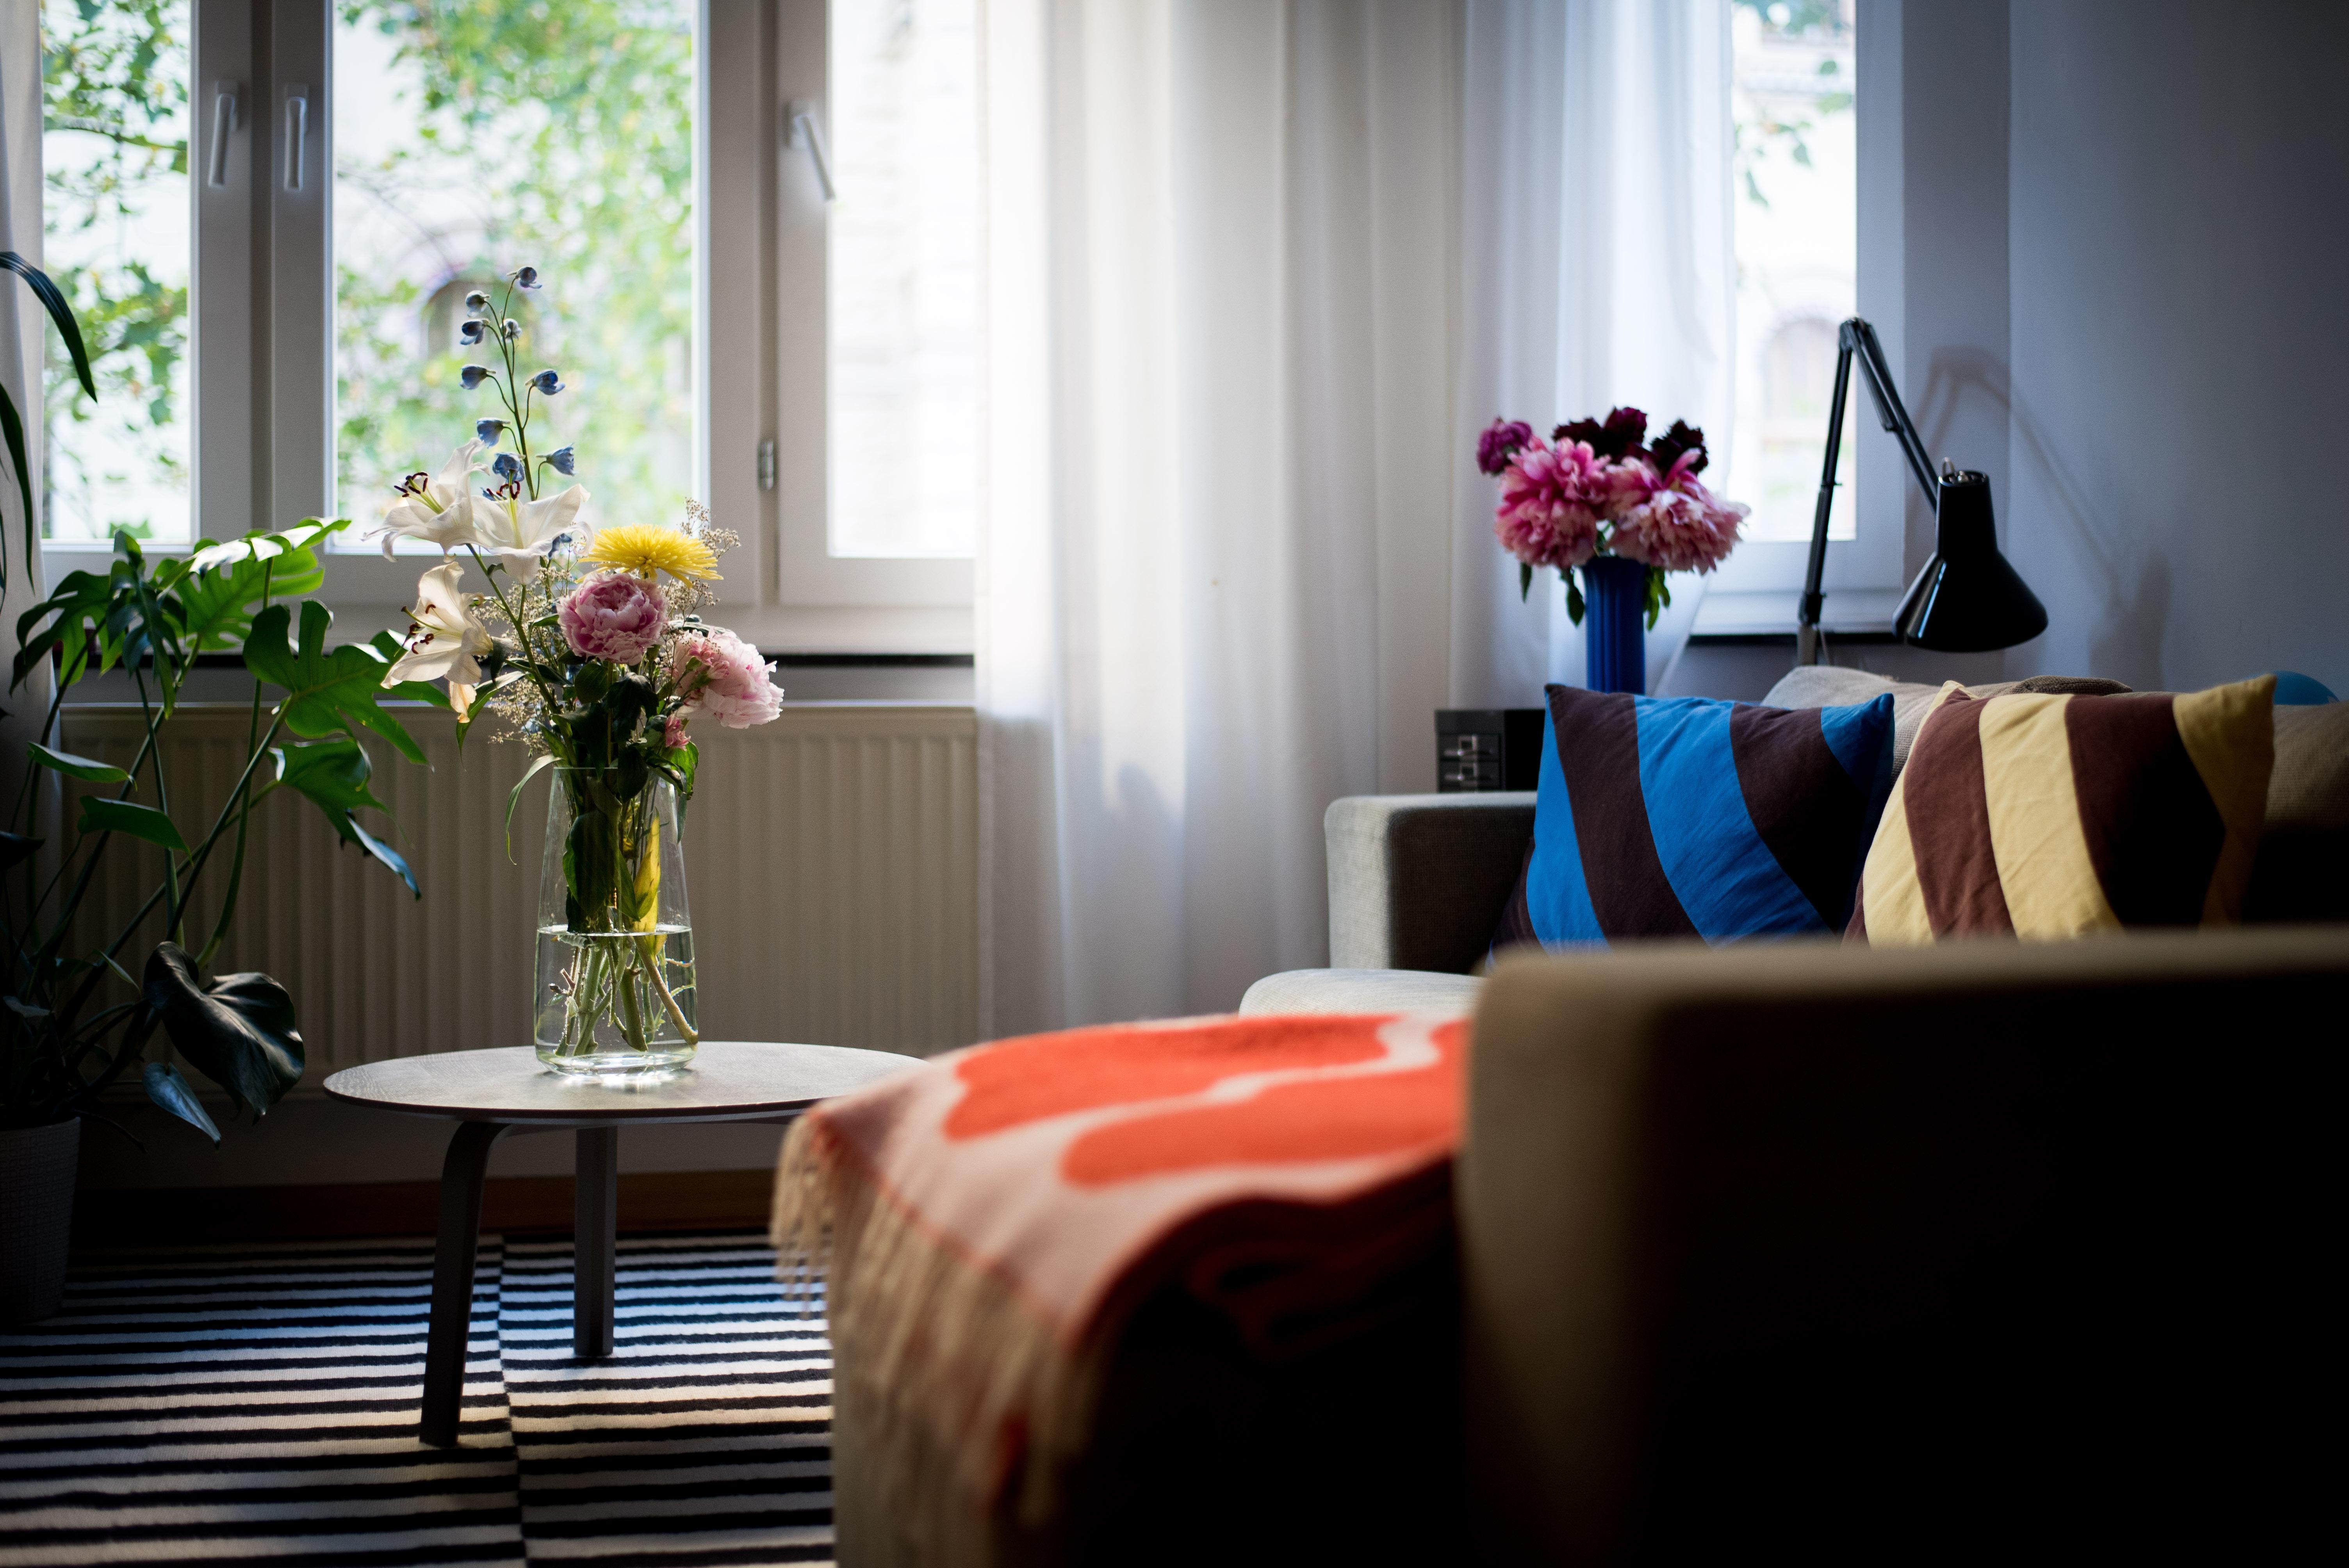 Schönen farbenfrohen Mittwoch! #wohnzimmer #flowers #couch #cozyplace #interiorinspo #livingroom #wohnzimmer #altbau